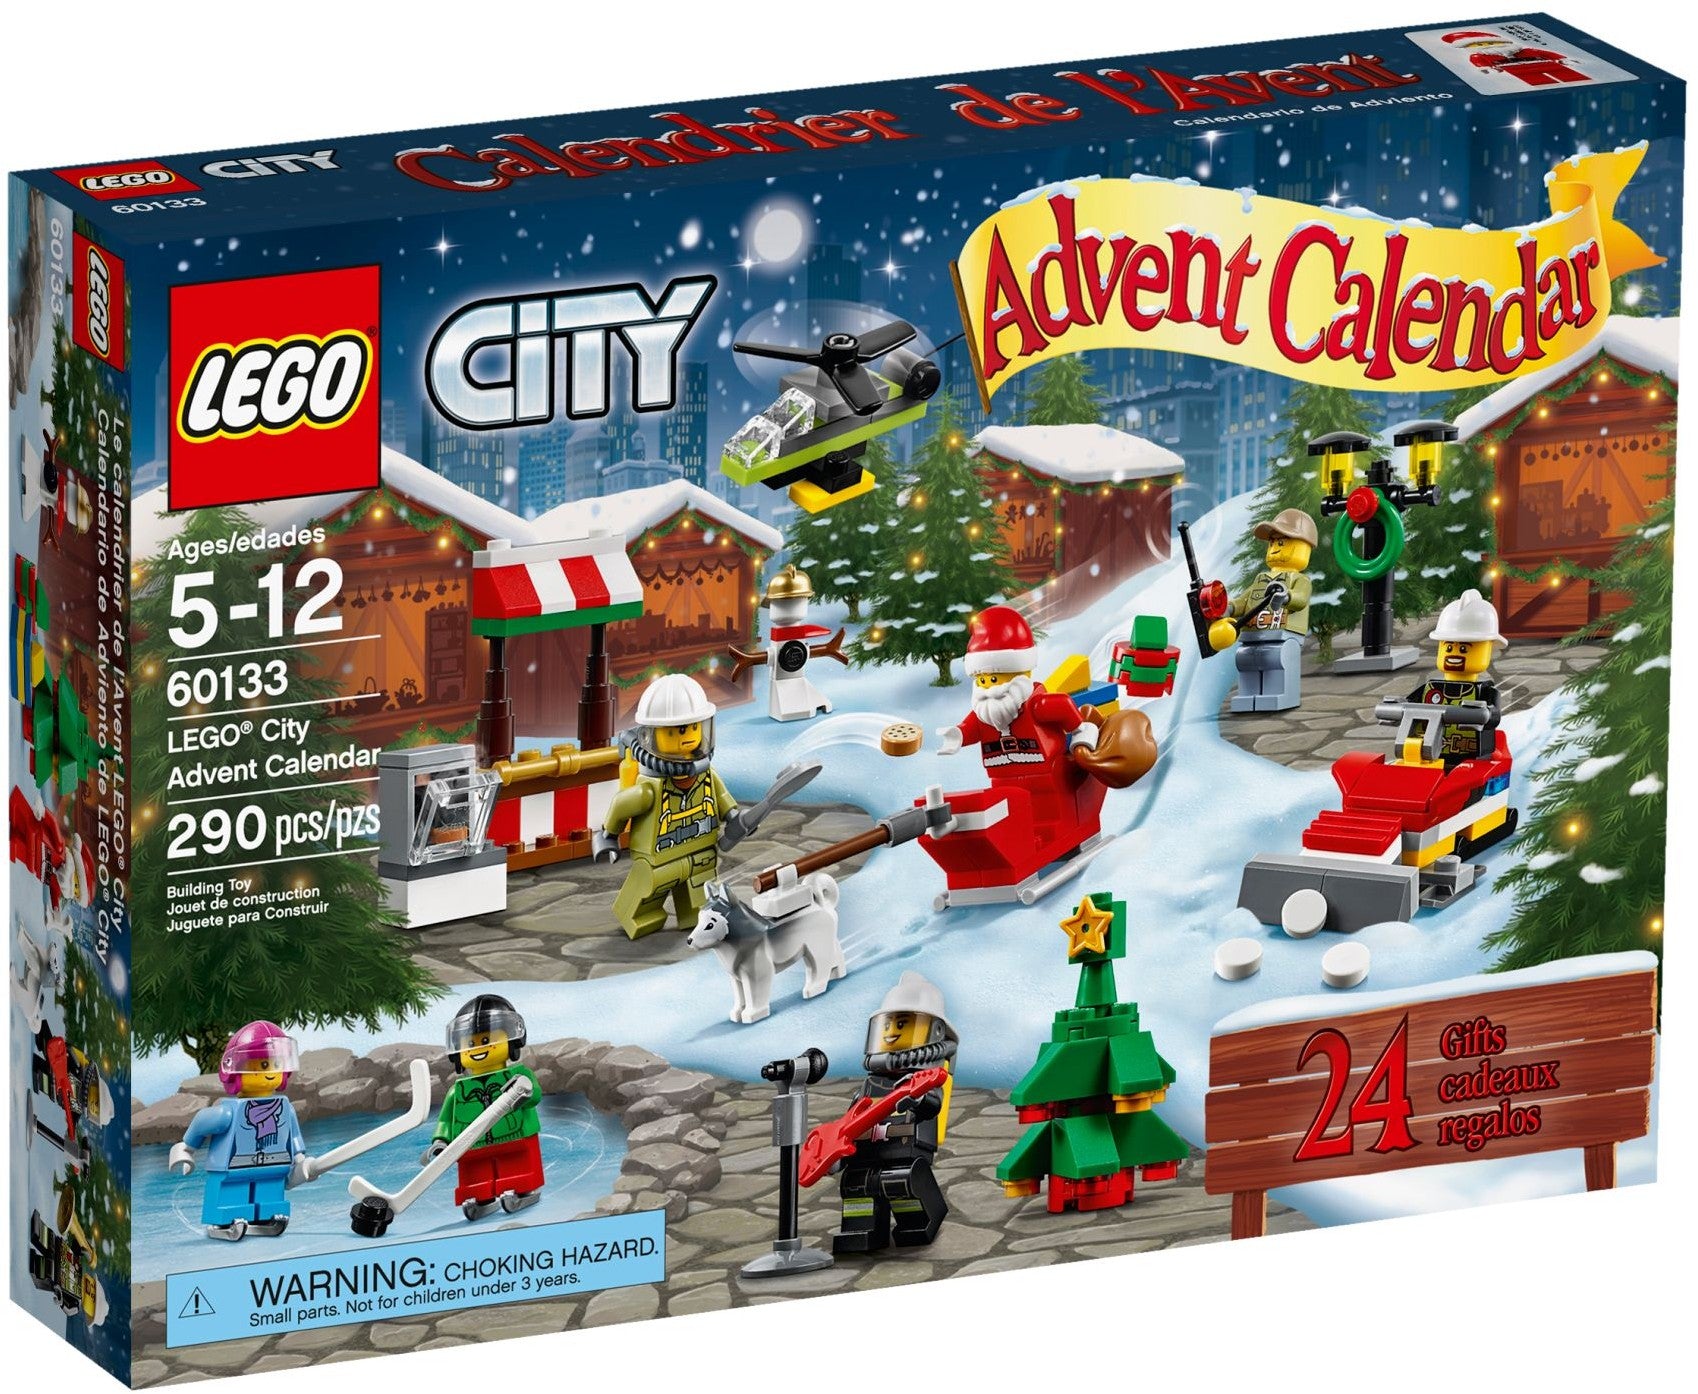 Lego City 60133 - Advent Calendar 2016